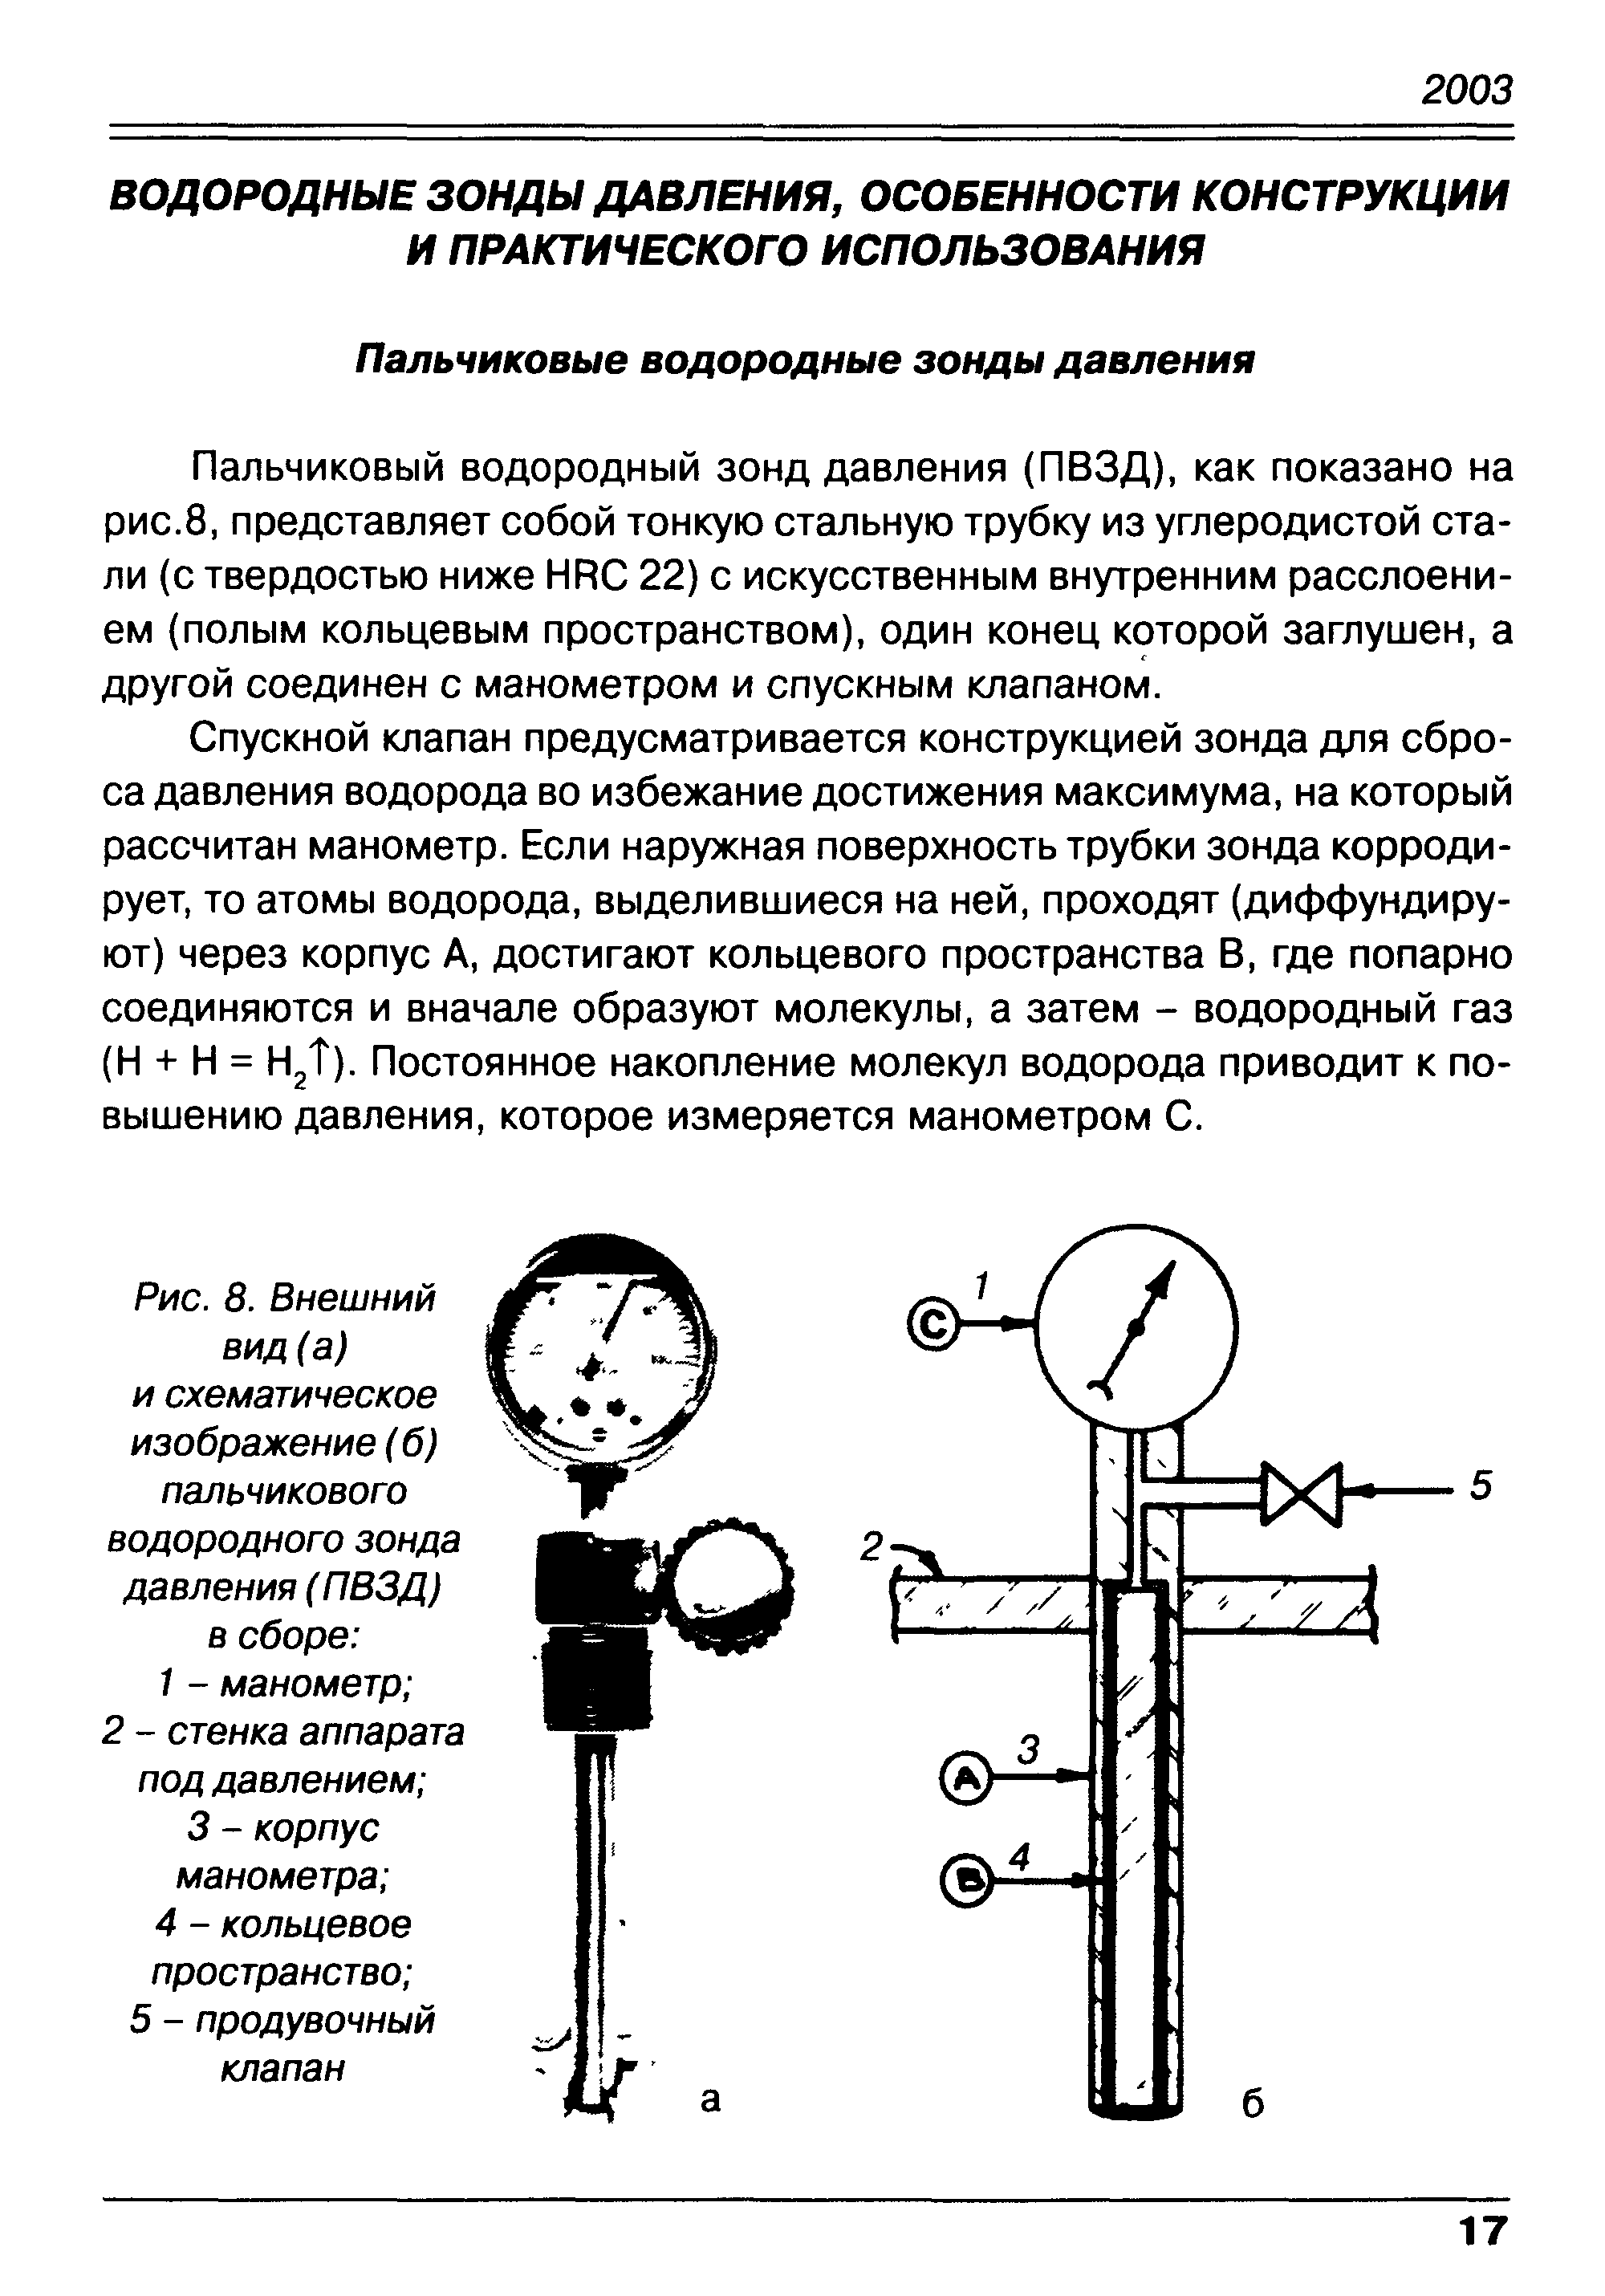 Пальчиковый водородный зонд давления (ПВЗД), как показано на рис.8, представляет собой тонкую стальную трубку из углеродистой стали (с твердостью ниже HR 22) с искусственным внутренним расслоением (полым кольцевым пространством), один конец которой заглушен, а другой соединен с манометром и спускным клапаном.